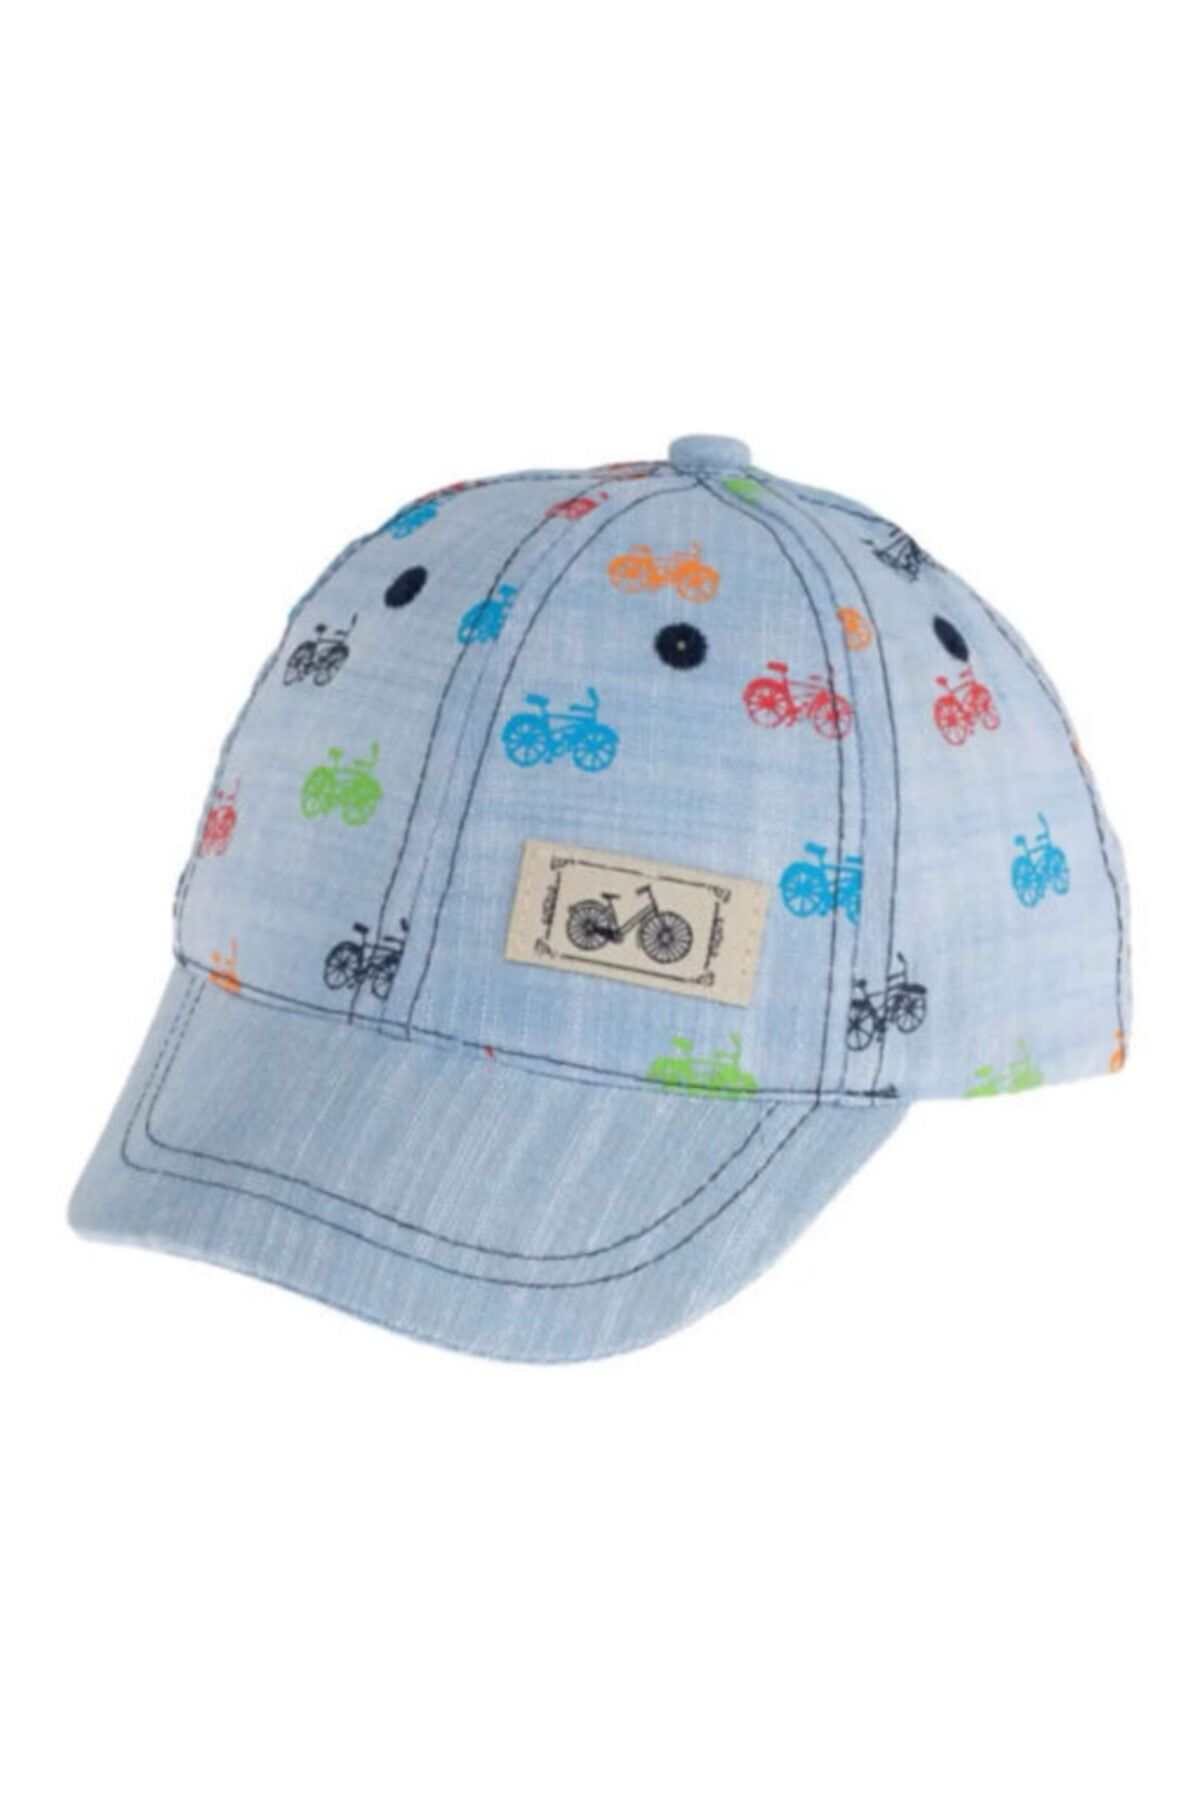 Kitti Erkek Çocuk Bisikletli Şapka 12-30 Ay Baş Çevresi 43-48 Cm